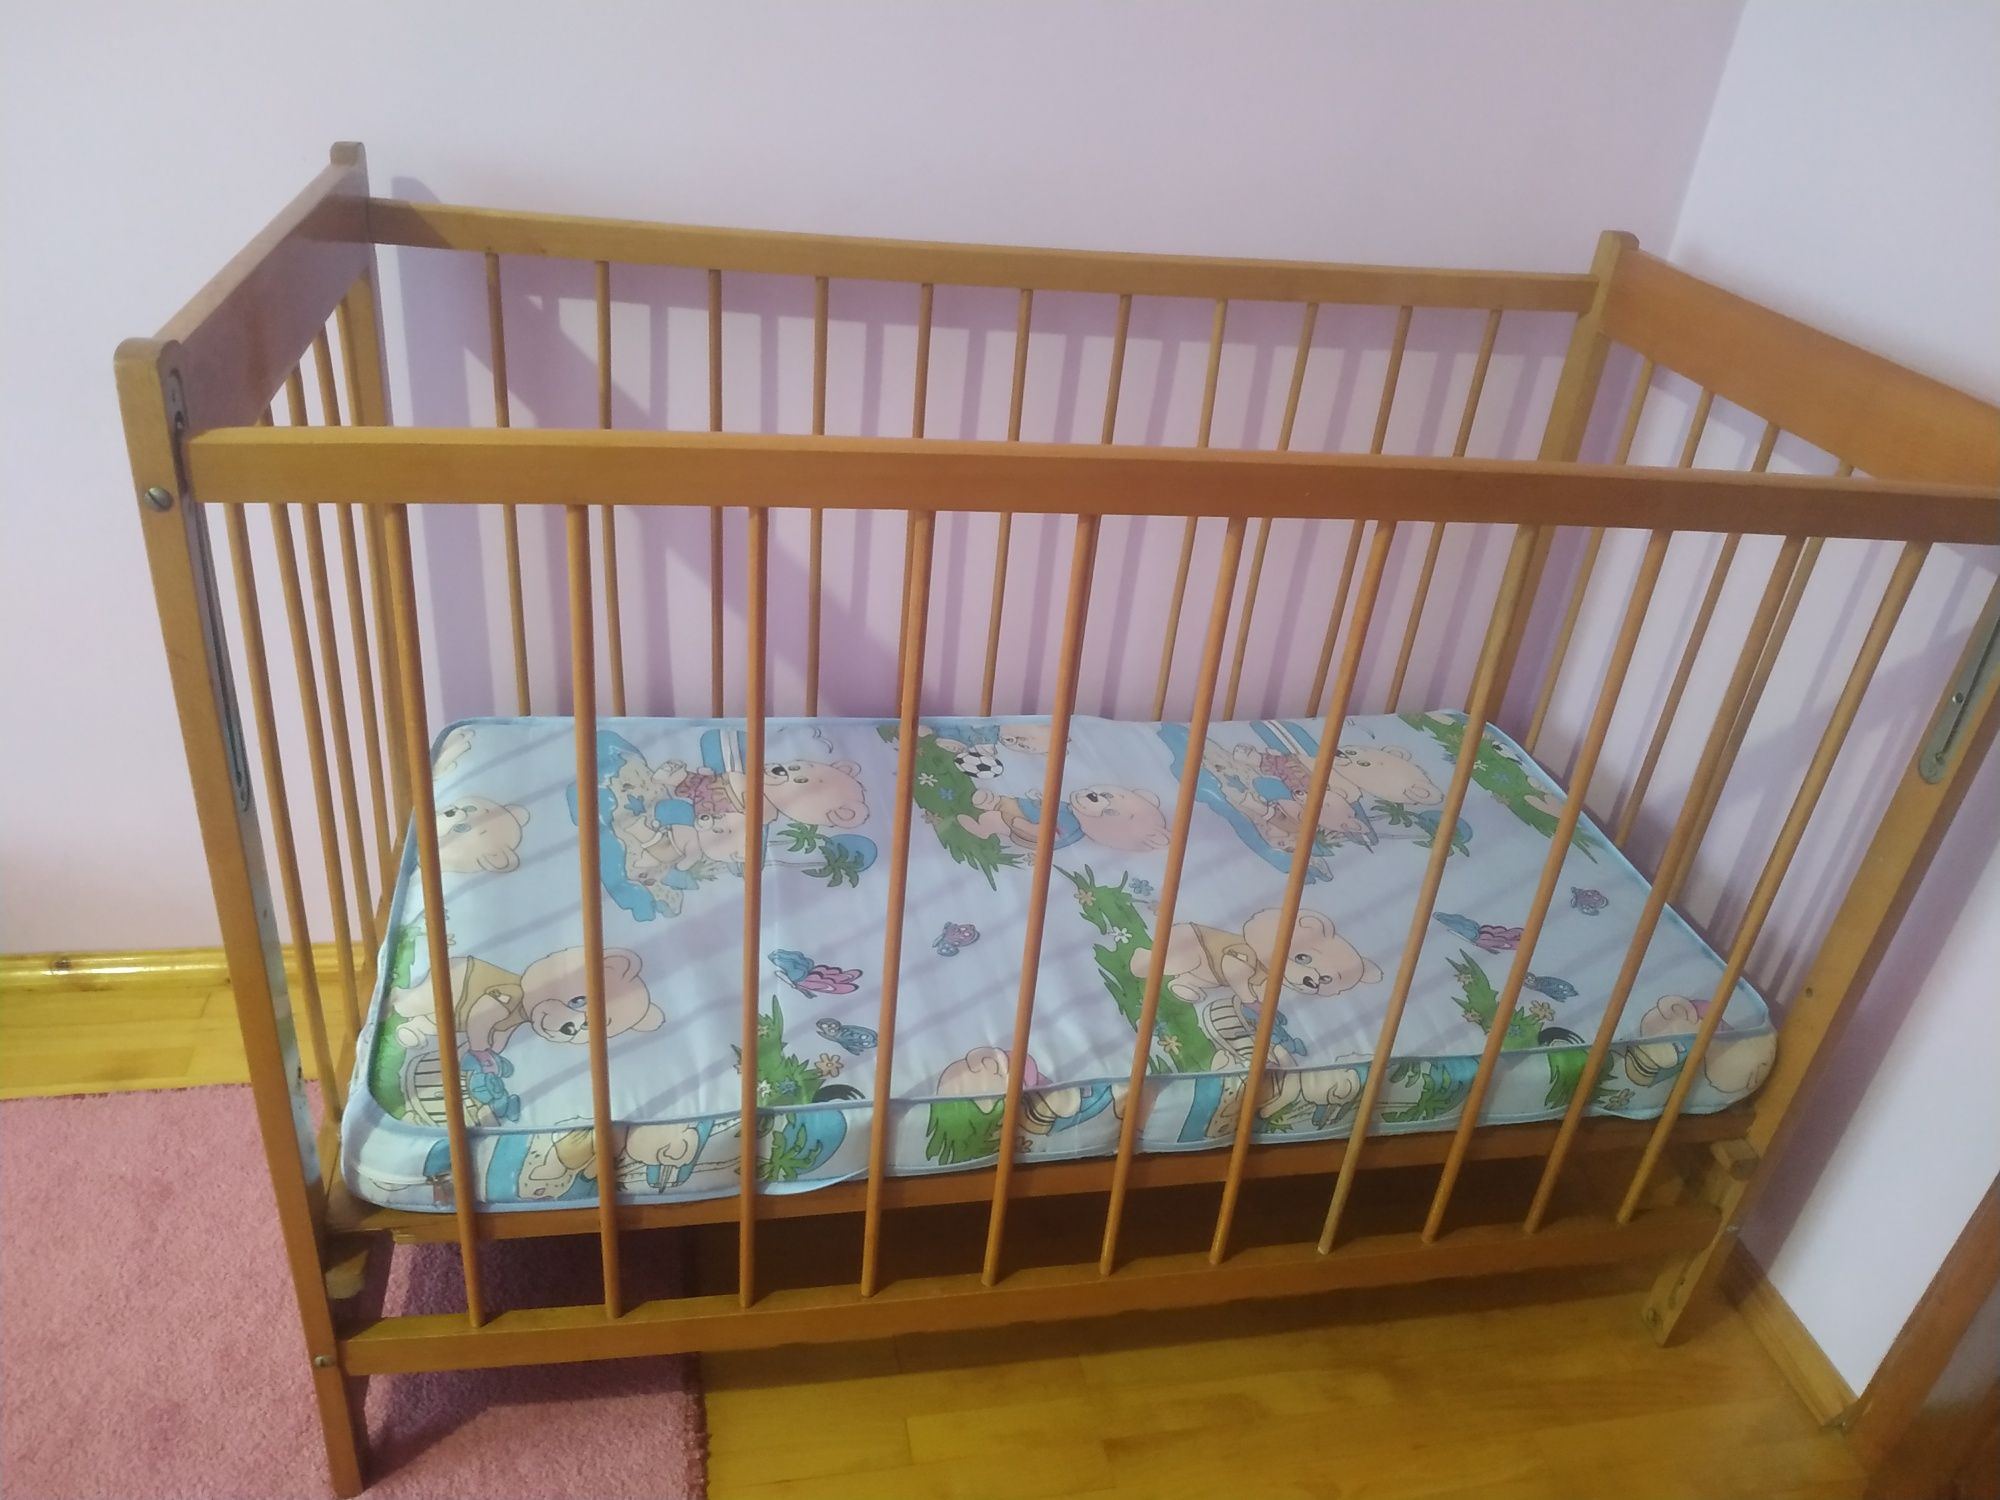 Дитяча кроватка з матрацом